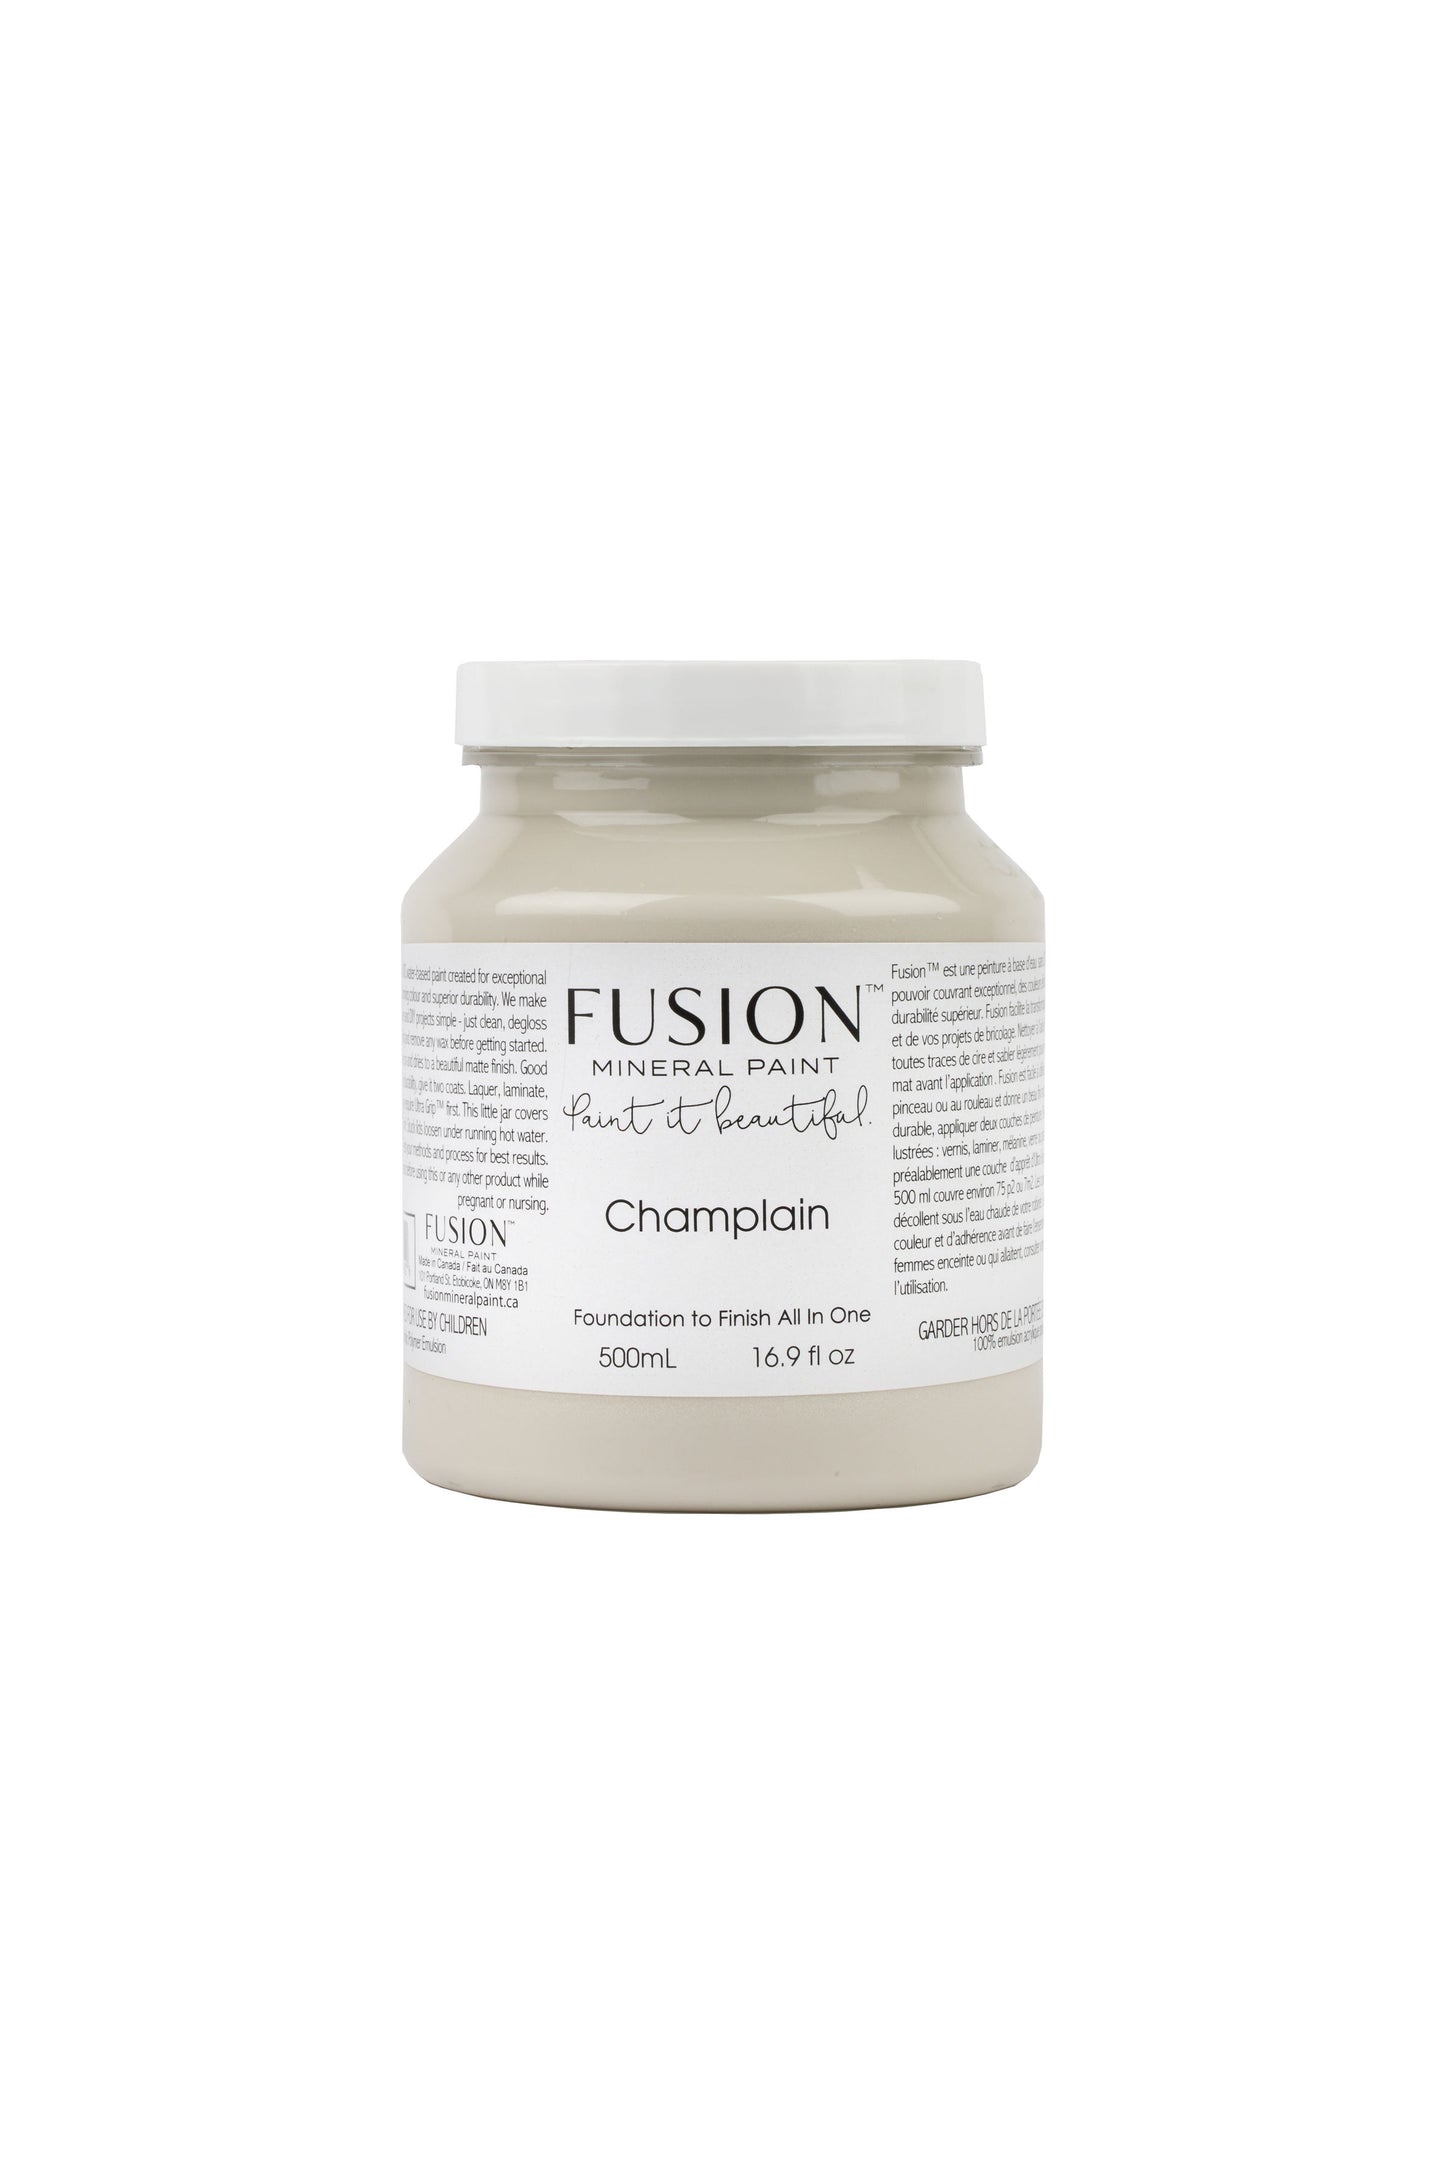 Champlain Fusion Mineral Paint, Warm White Paint Color | 500ml Pint Size